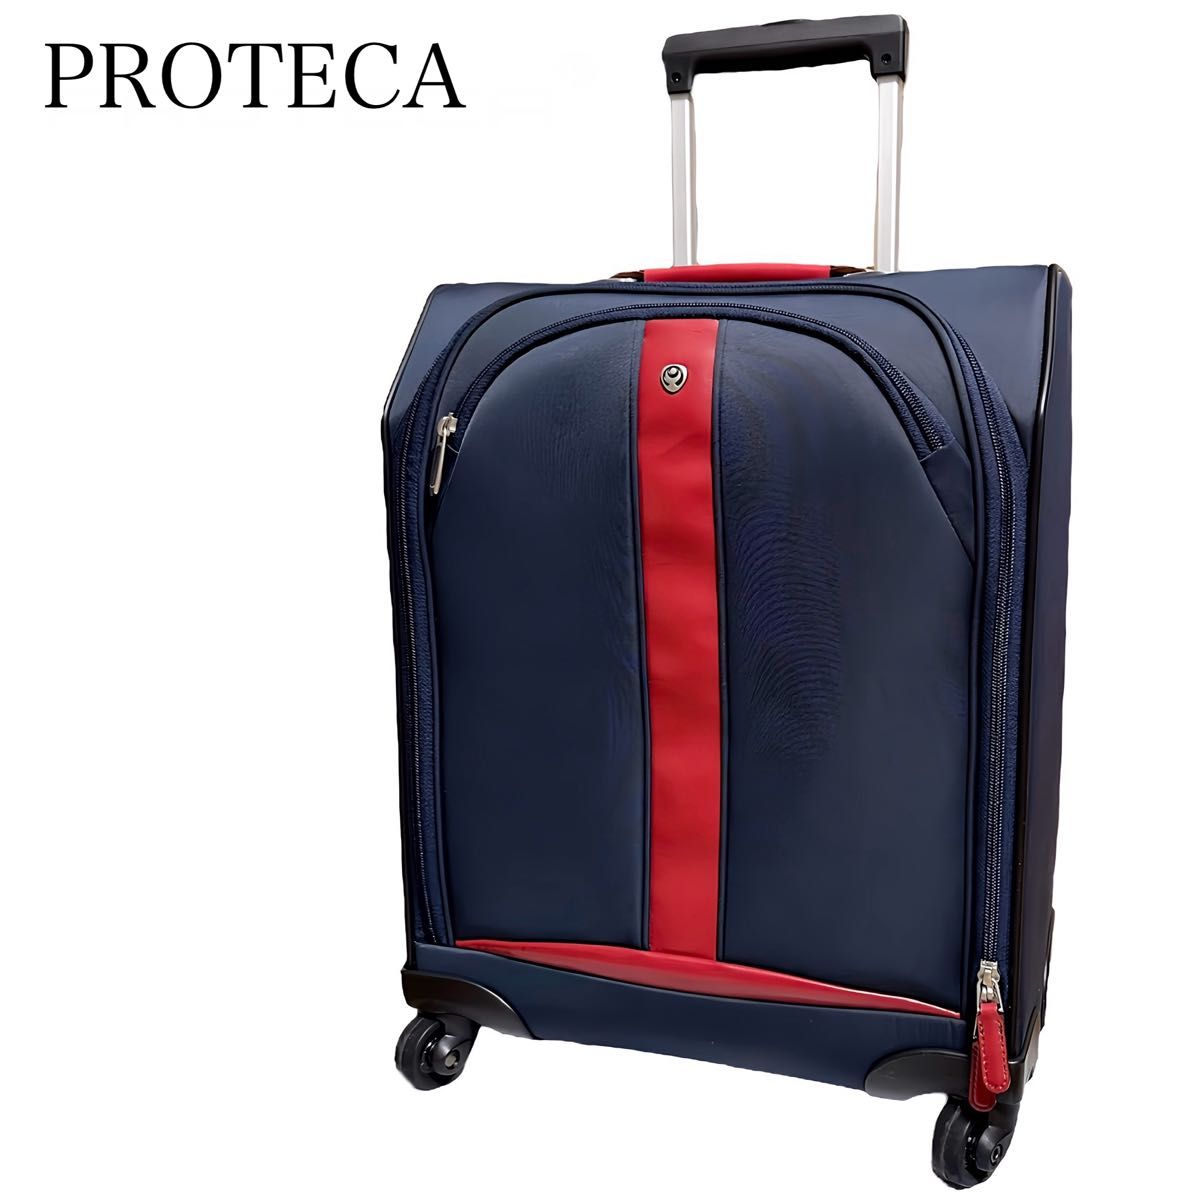 PROTECA プロテカ ソフトキャリーケース スーツケース 旅行バッグ ビジネス 出張 機内持ち込み可 四輪 ネイビー×レッド